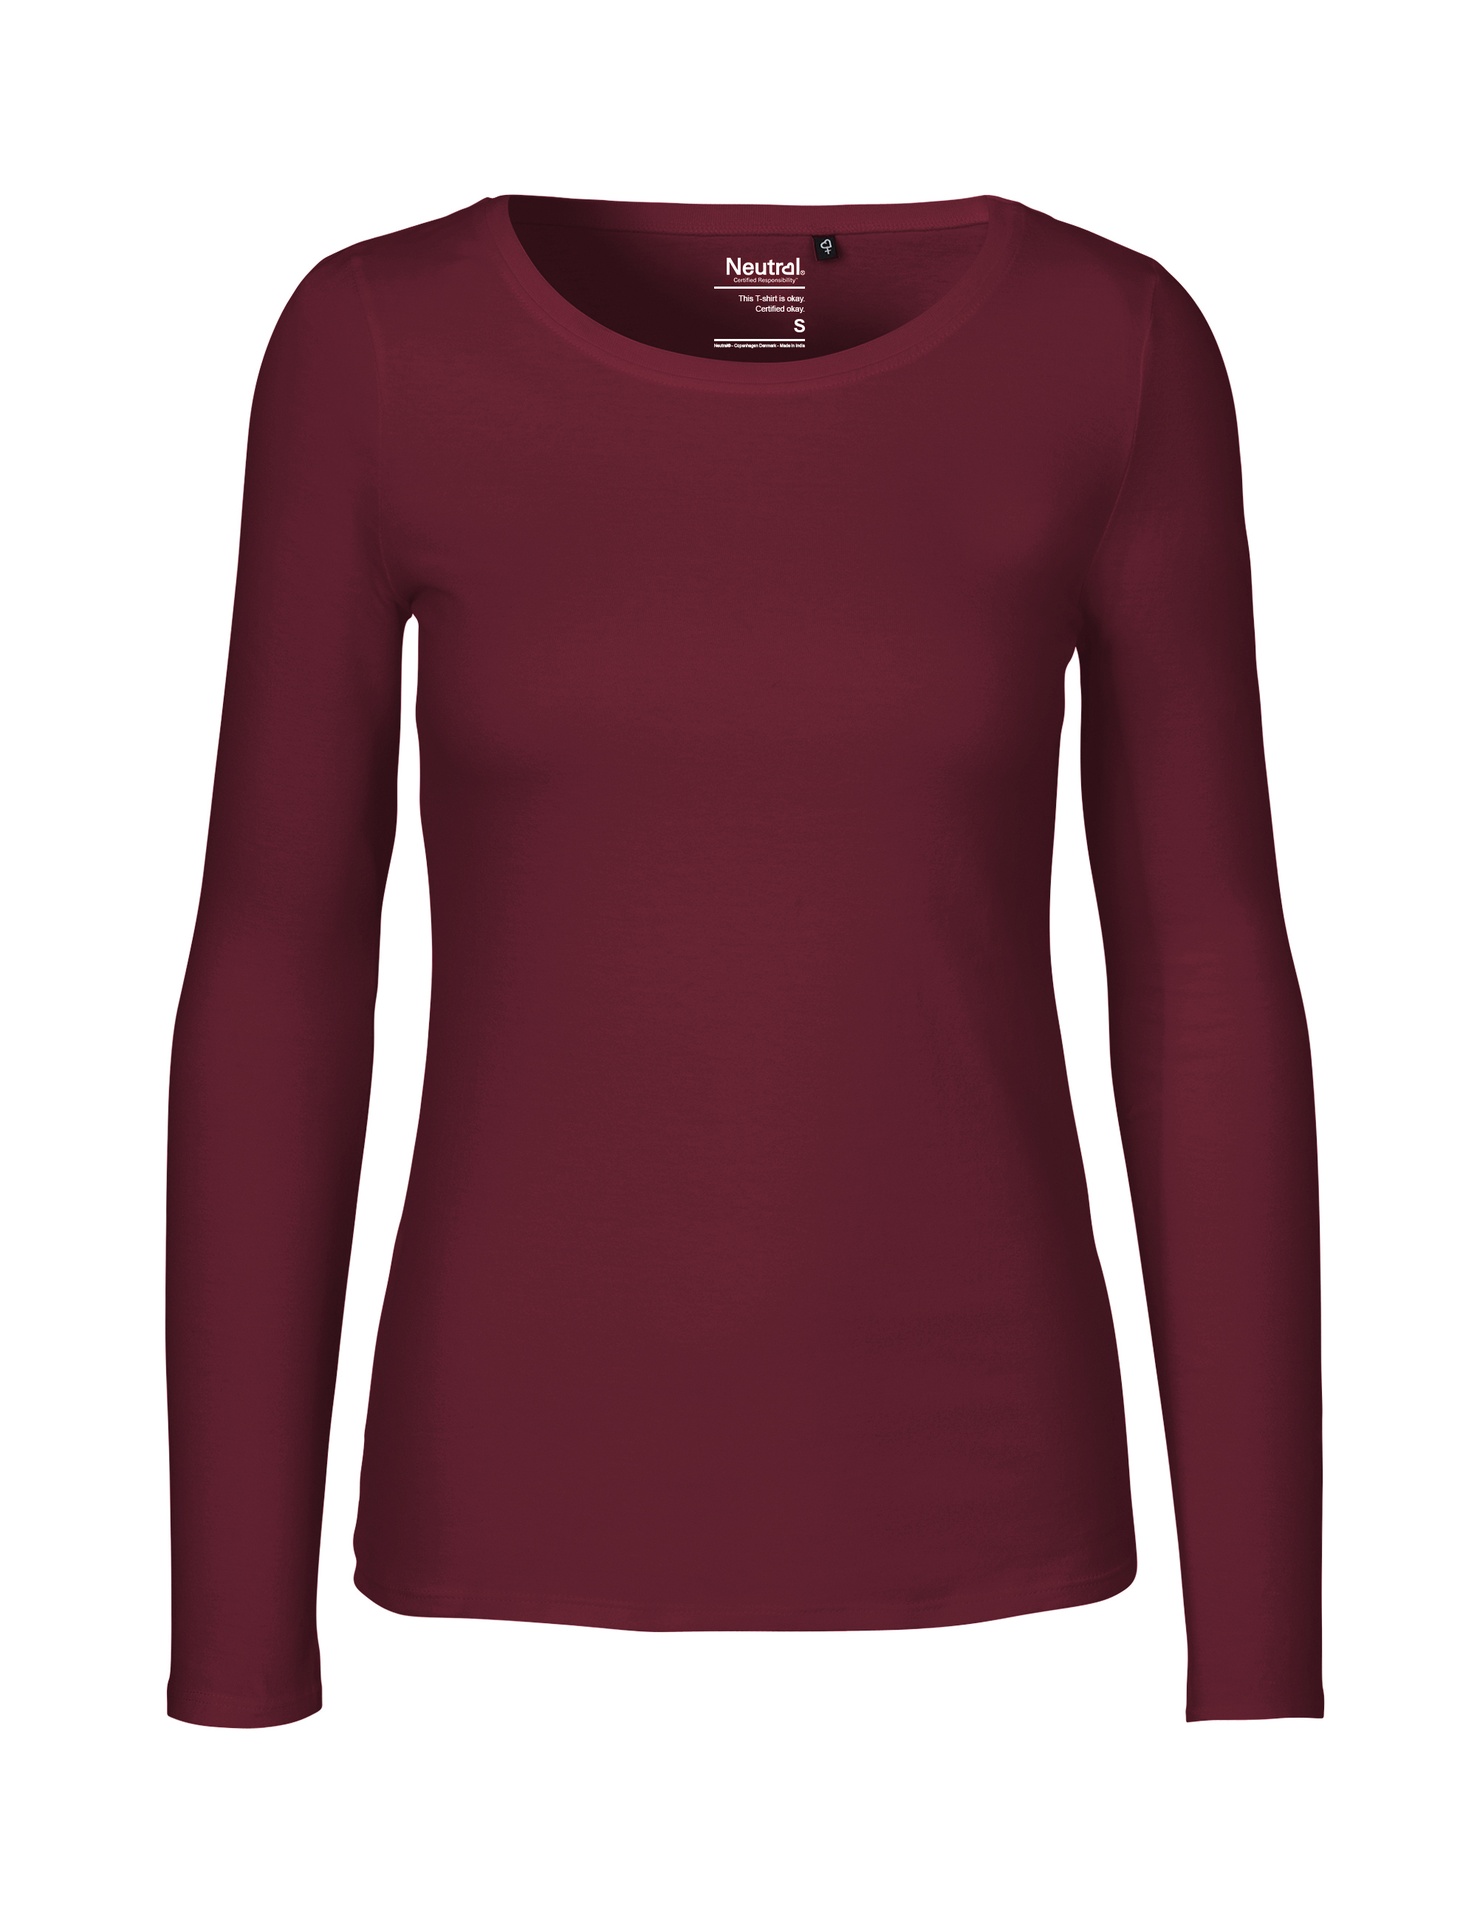 [PR/04706] Ladies Long Sleeve T-Shirt (Bordeaux 26, S)